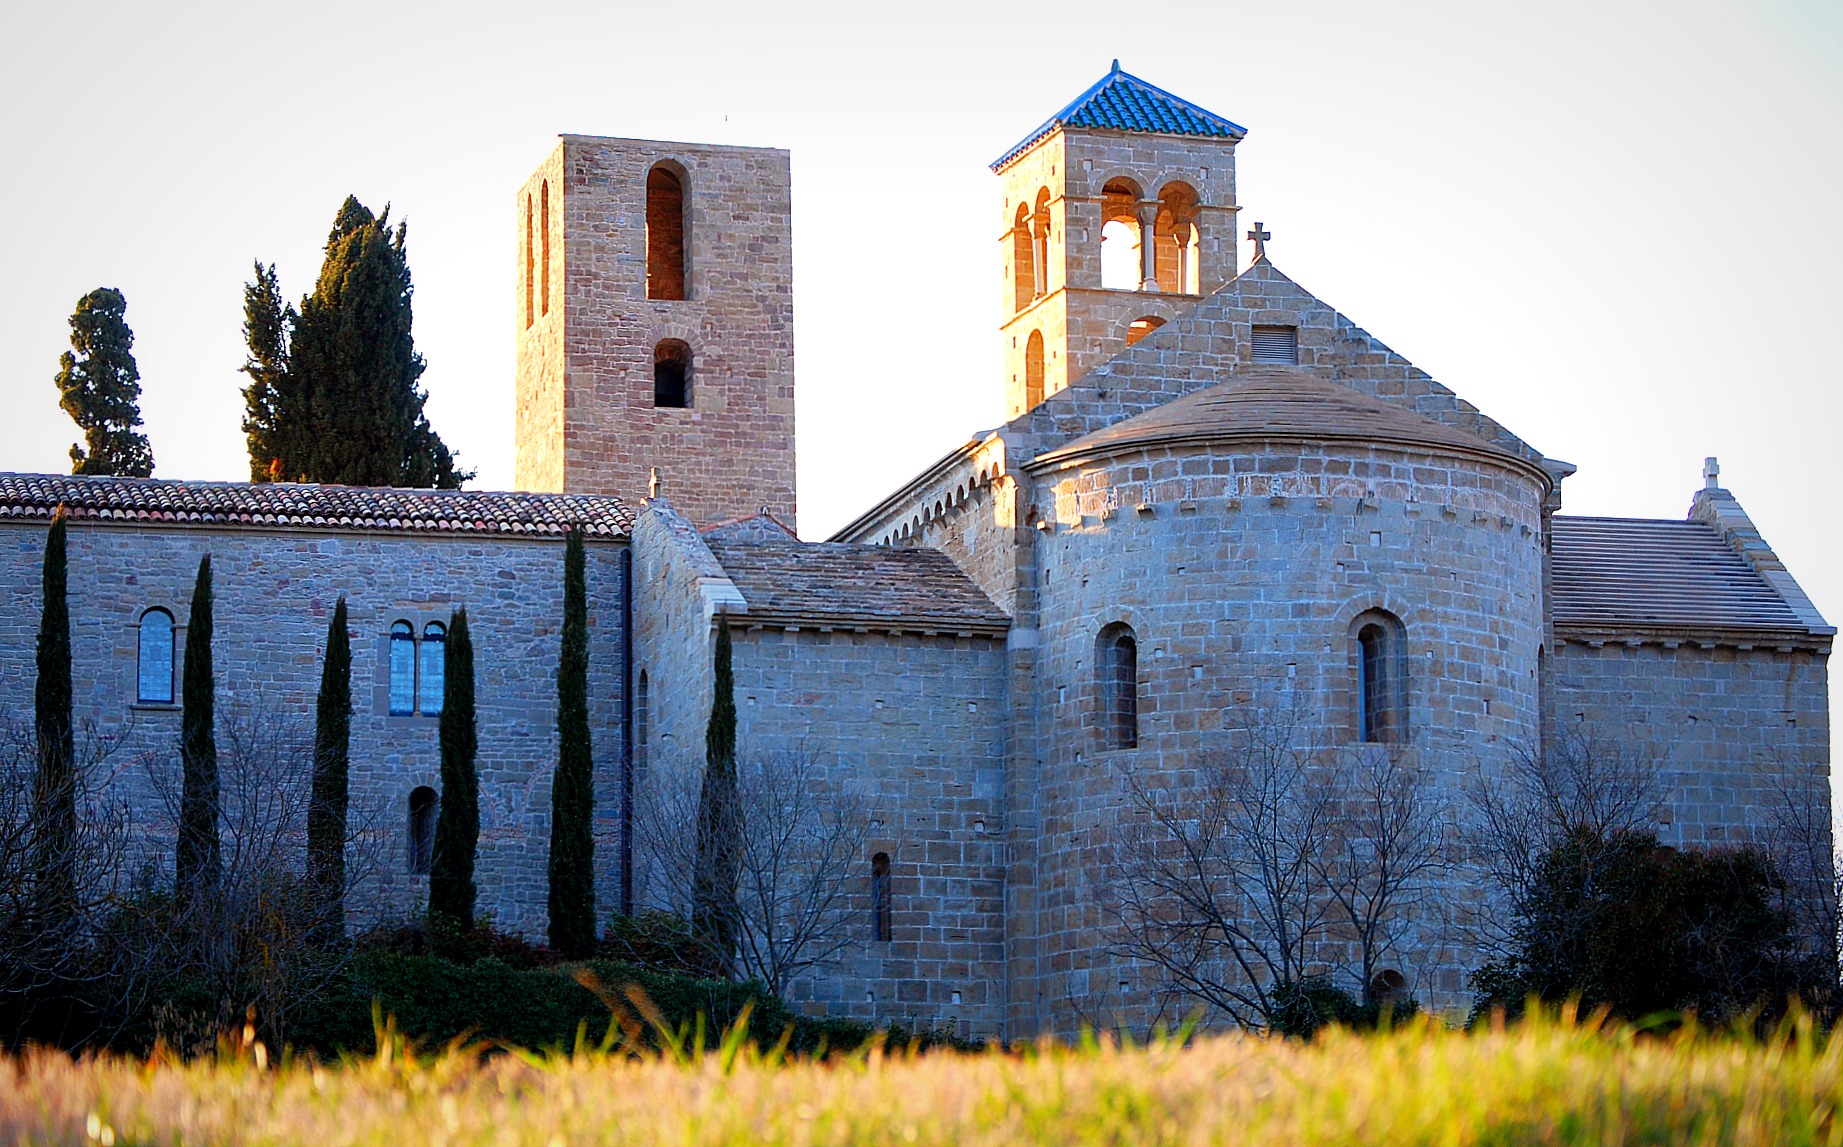 Monasterio de Sant Benet de Bages - tetegil - Flickr